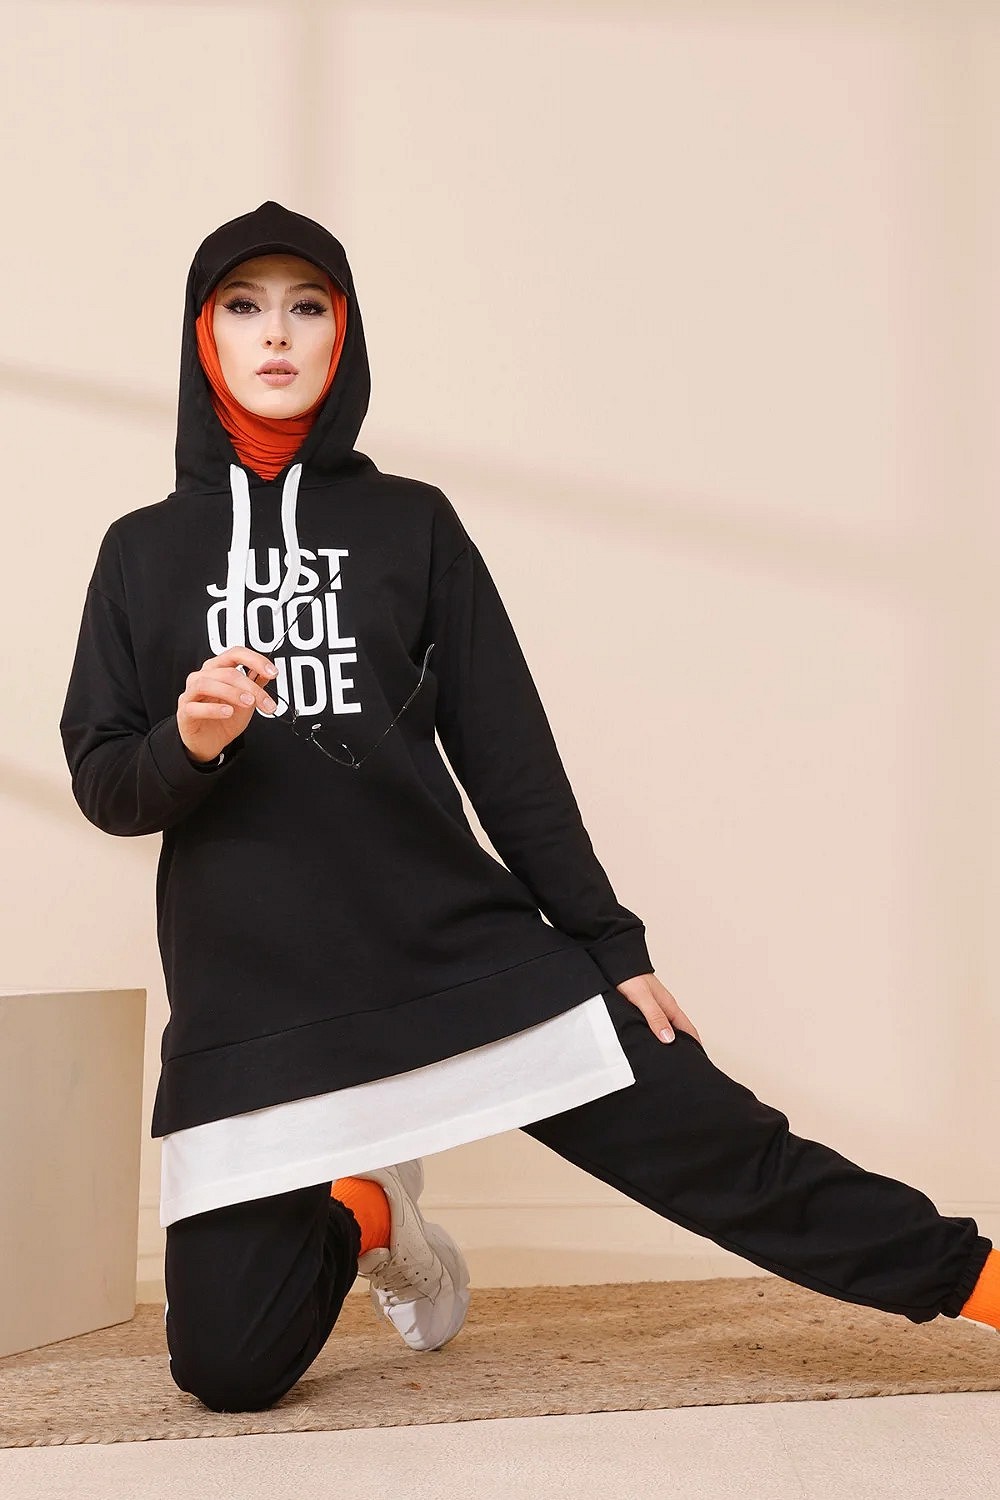 Survêtement avec extension blanche - Ensemble Sweat à capuche imprimé  (Boutique Hijab France - Vente en ligne de vêtements) - Couleur gris clair